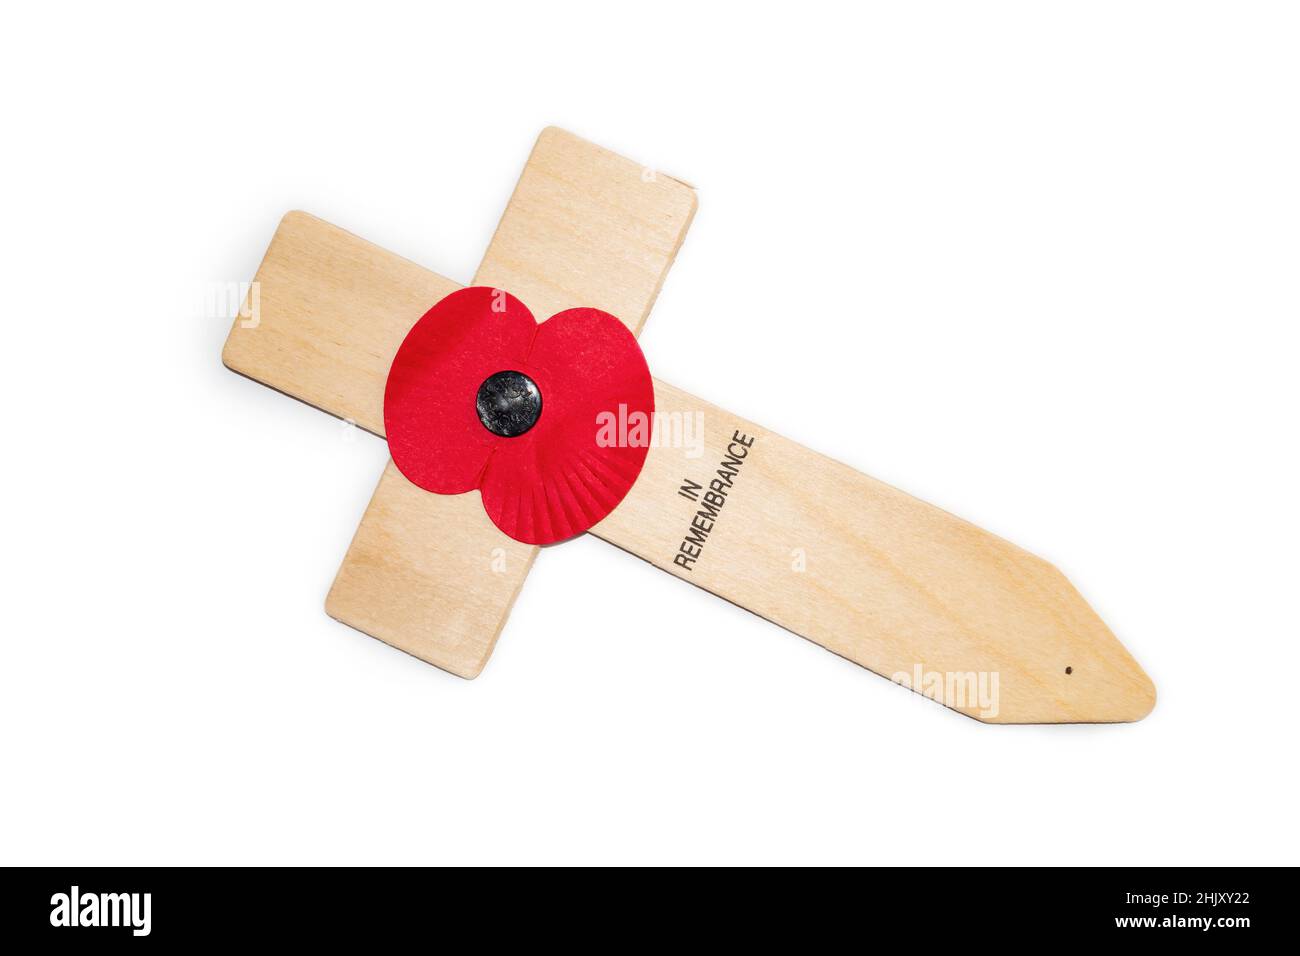 Royal British Legion Poppy auf einem Holzkreuz. In Erinnerung. Militärische Gedenkstätte des Ersten und Zweiten Weltkriegs. Stockfoto